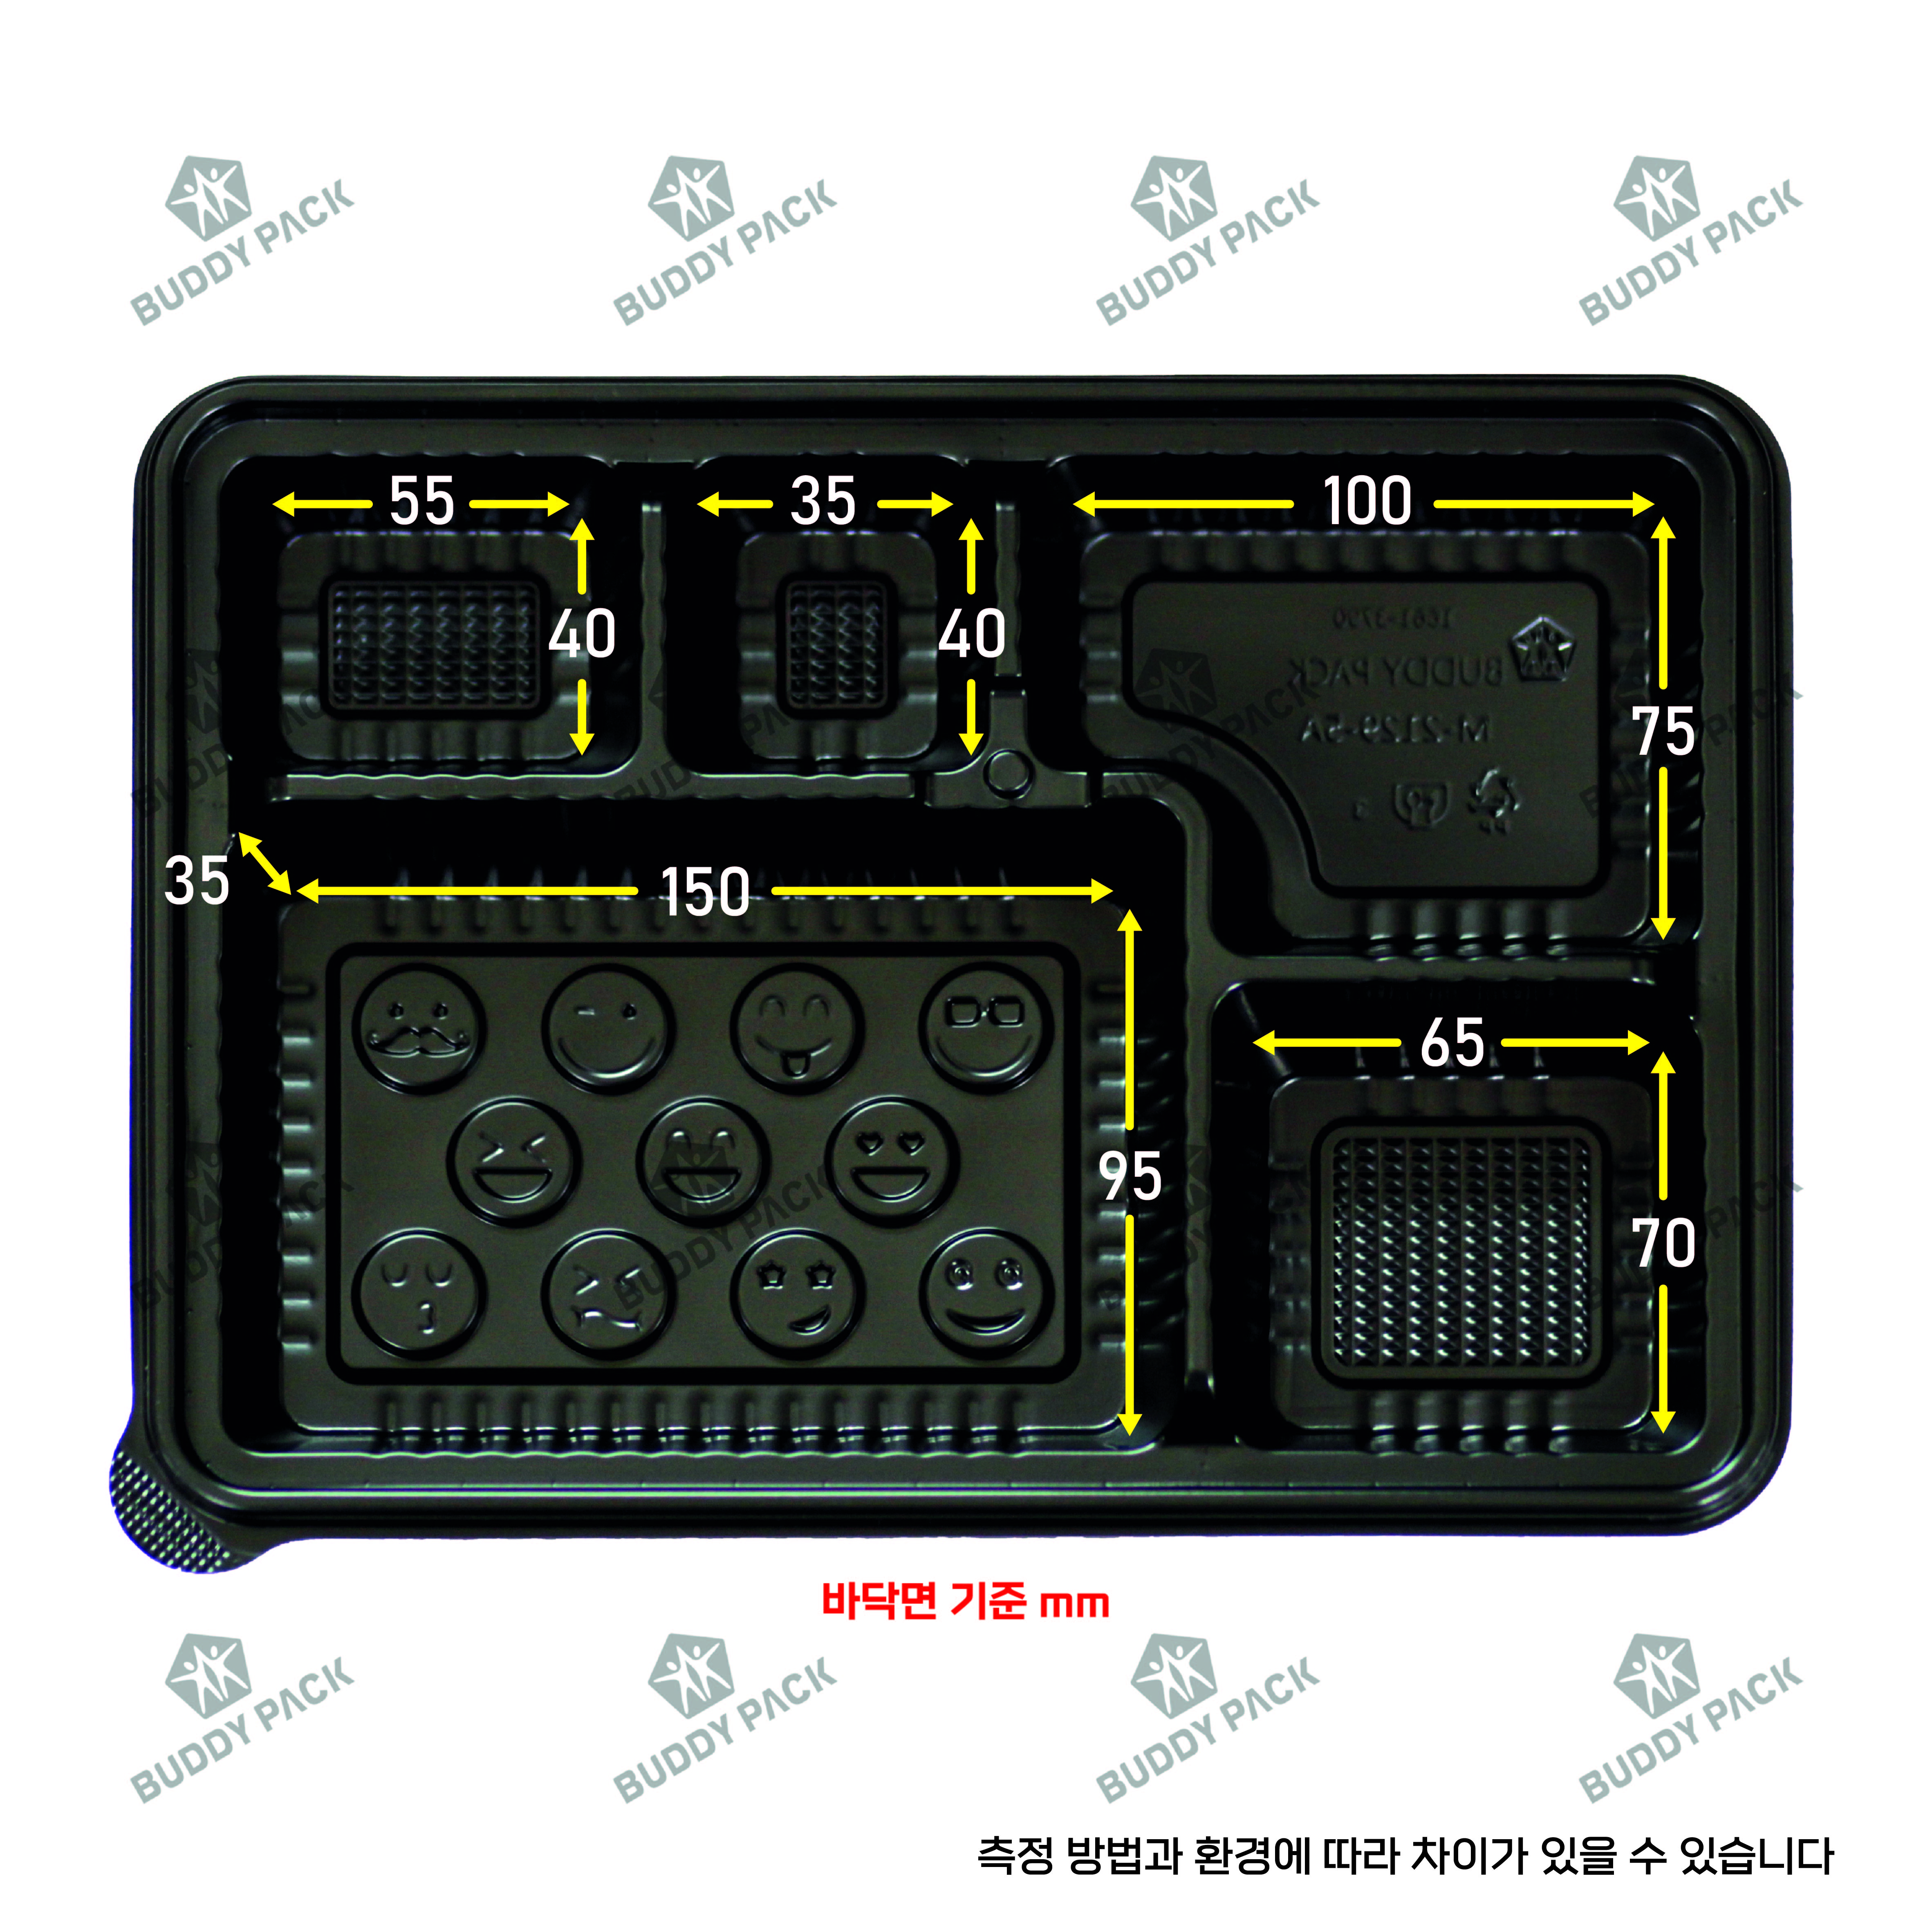 버디팩 고급 돈가스용기 M-2129-5A 검정300개(방담뚜껑)